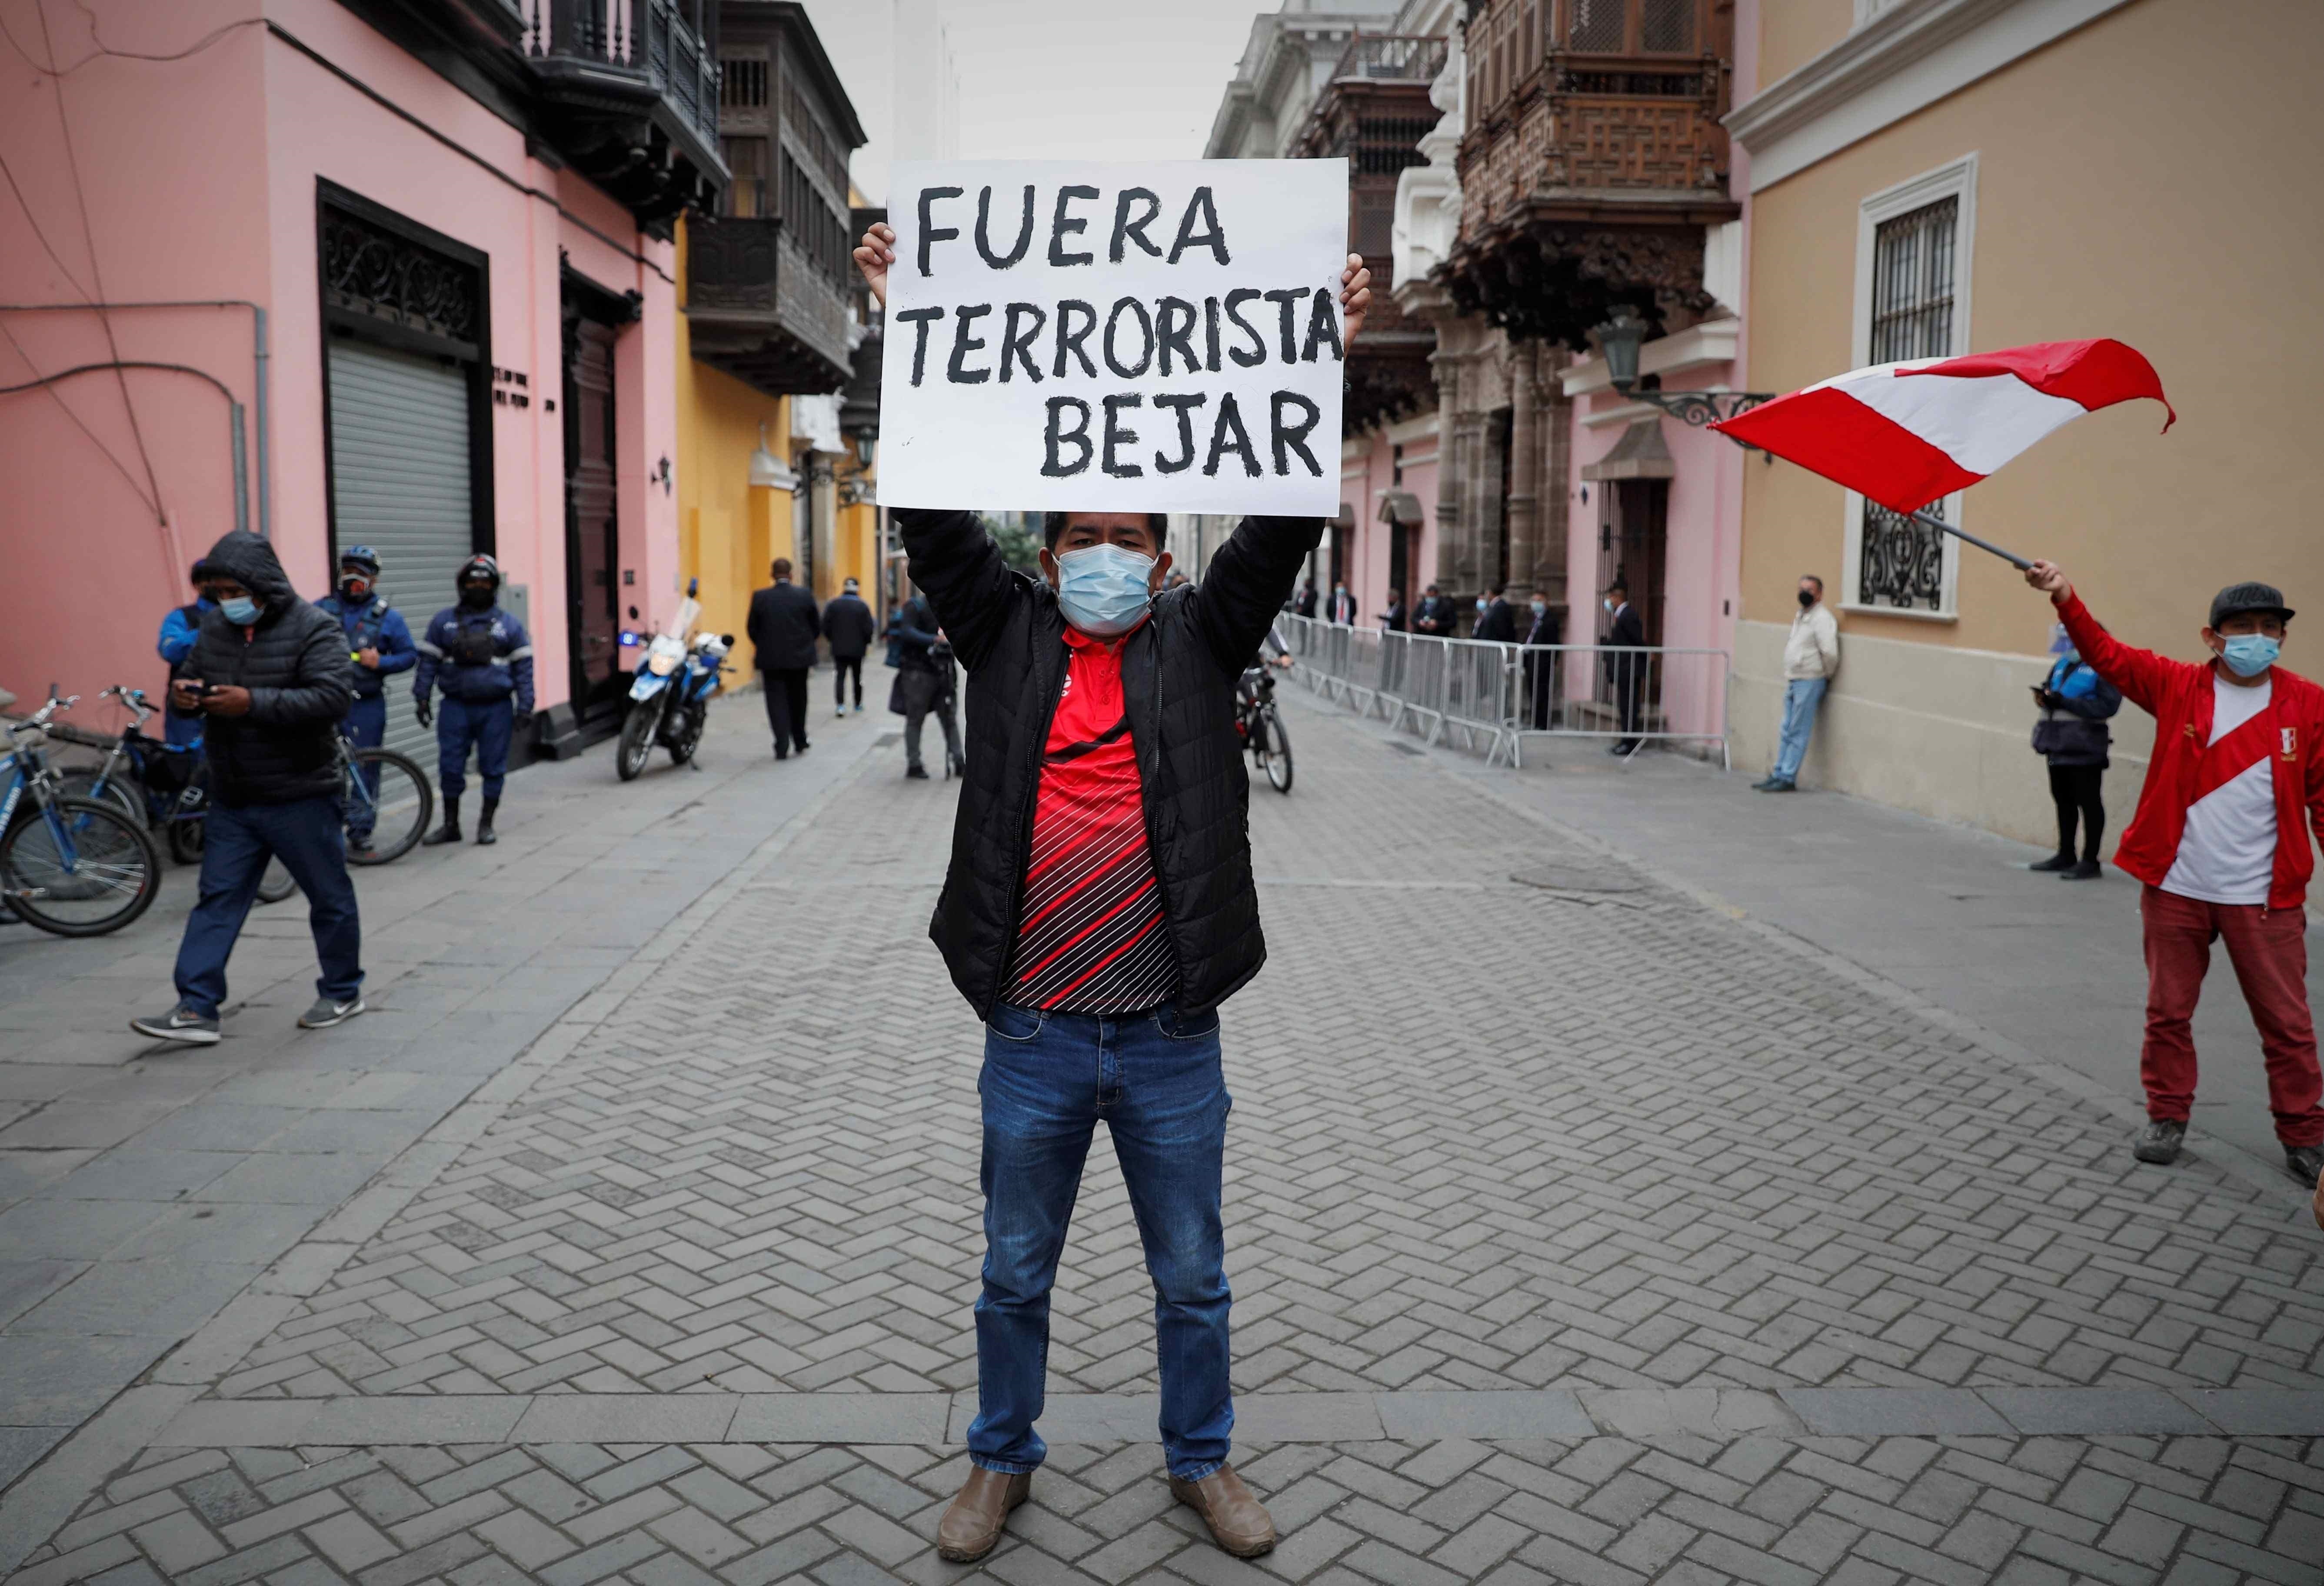 Un grupo de personas fue registrado este martes al protestar en contra del canciller peruano, Héctor Bejar, en los exteriores del palacio de Torre Tagle, sede de la Cancillería, en Lima (Perú). EFE/Paolo Aguilar

